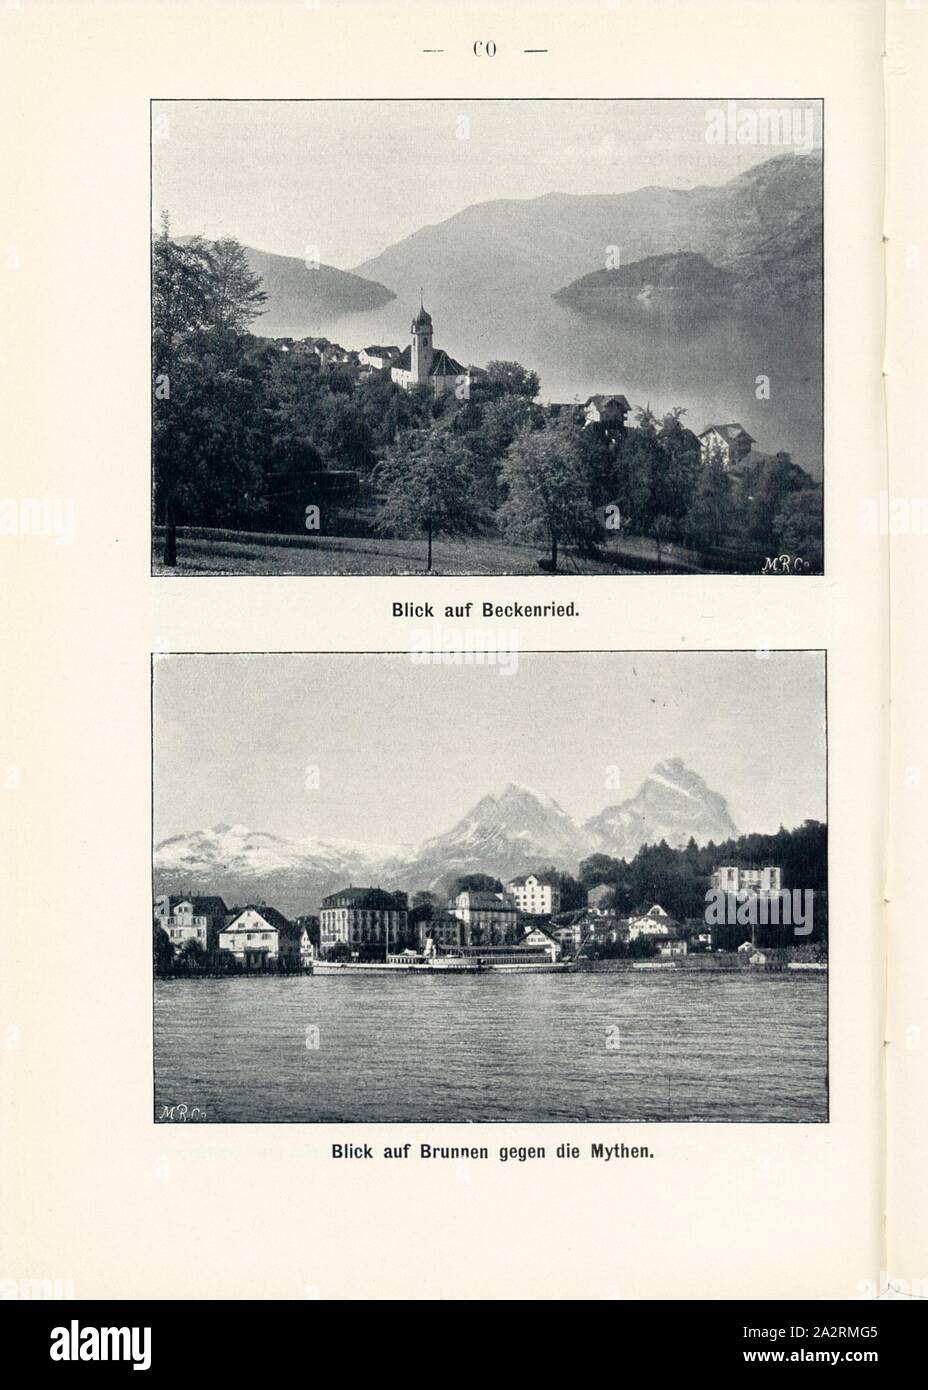 View of Beckenried and view of fountains against the myths, Beckenried in the Canton of Nidwalden and Brunnen in the Canton of Schwyz, Signed: M.R.C, Fig. 61 and 62, p. 60, Meisenbach, Riffarth und Co. (imp.), 1900, J. Knobel: Illustrierter Reisebegleiter für die Alpenstrasse des Klausen und ihre Zufahrtslinien. Glarus: Buchdruckerei J. Spälti, 1900 Stock Photo